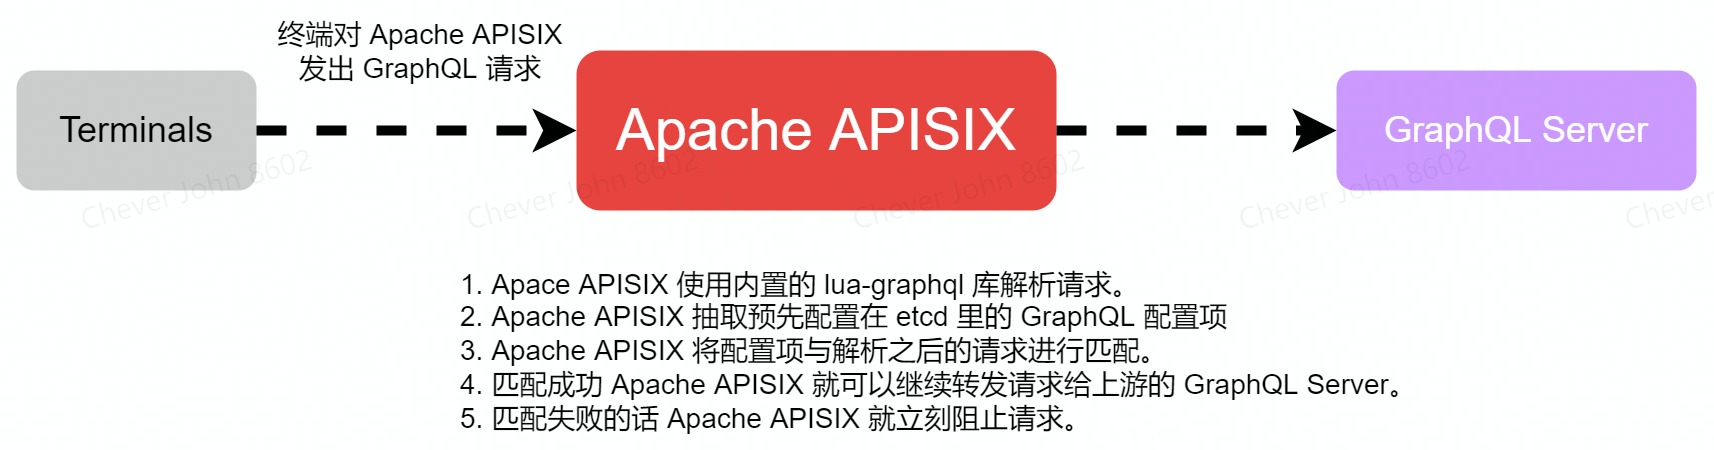 GraphQL流量在Apache_APISIX里的轨迹